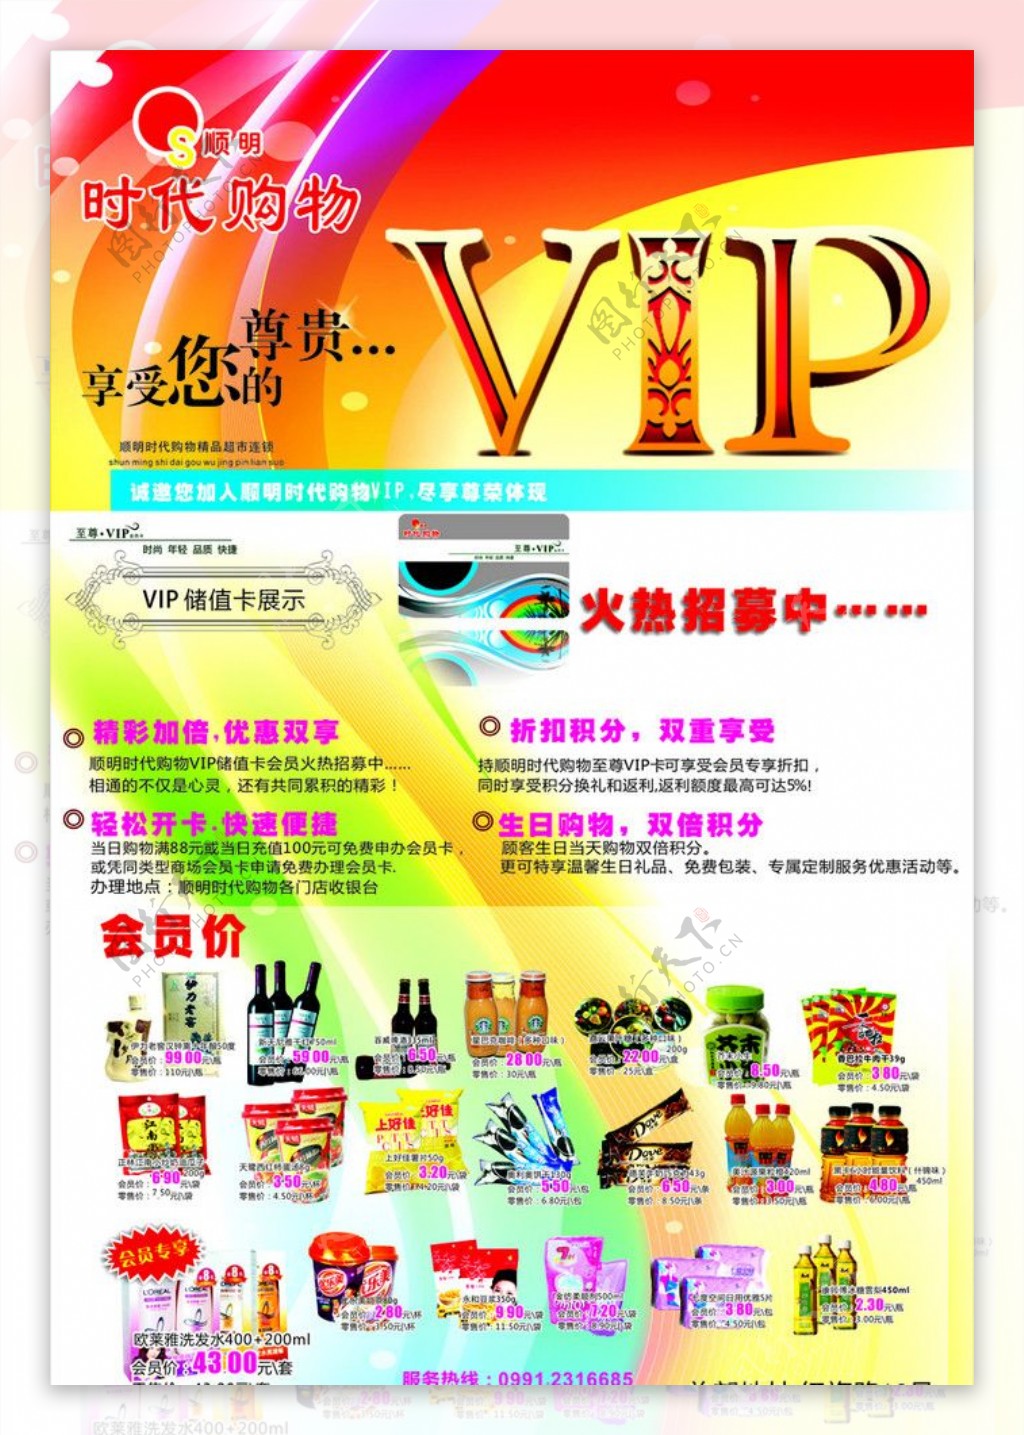 VIP会员火热招募活动宣传海报图片